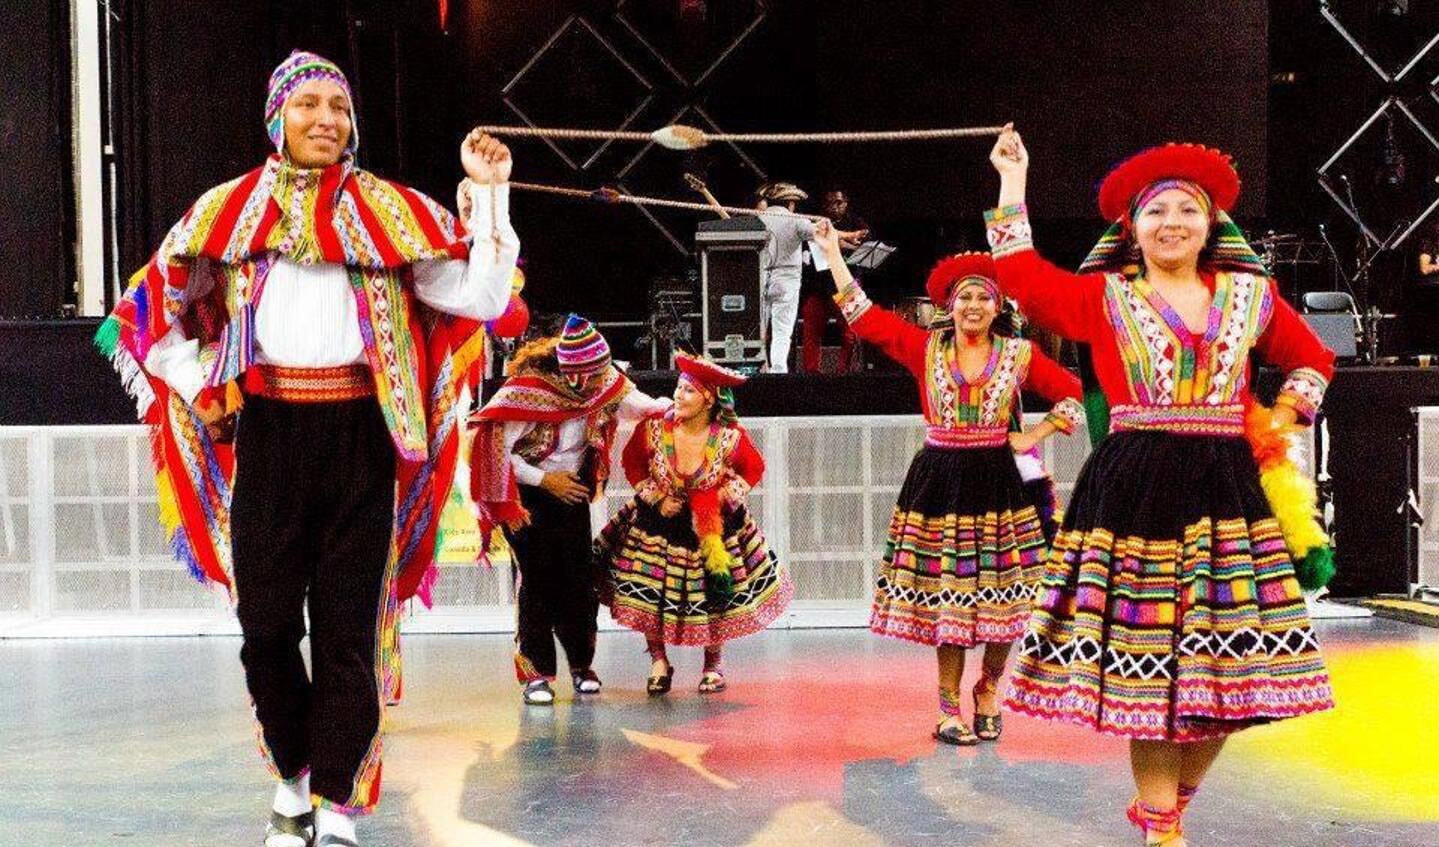 Ook een dansgroep uit Peru doet mee aan het evenement Football & Culture